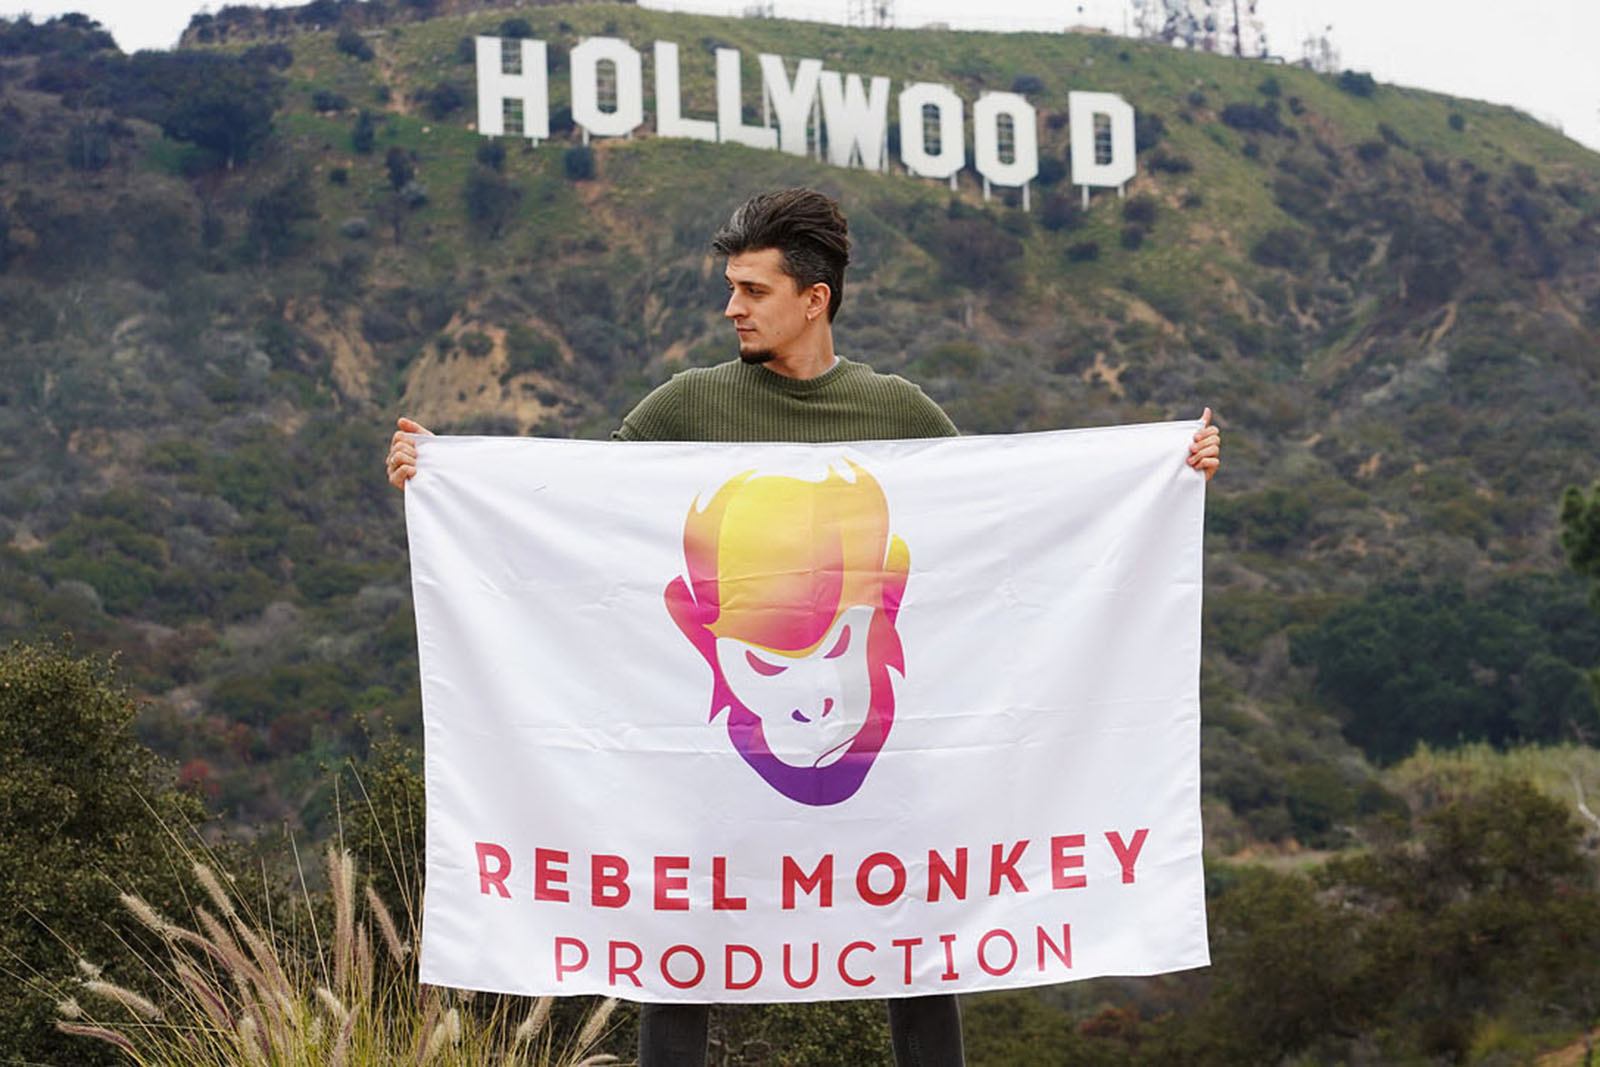 Rebel Monkey founder, Stanislav Puzdriak, planted his flag in U.S. soil in 2020.